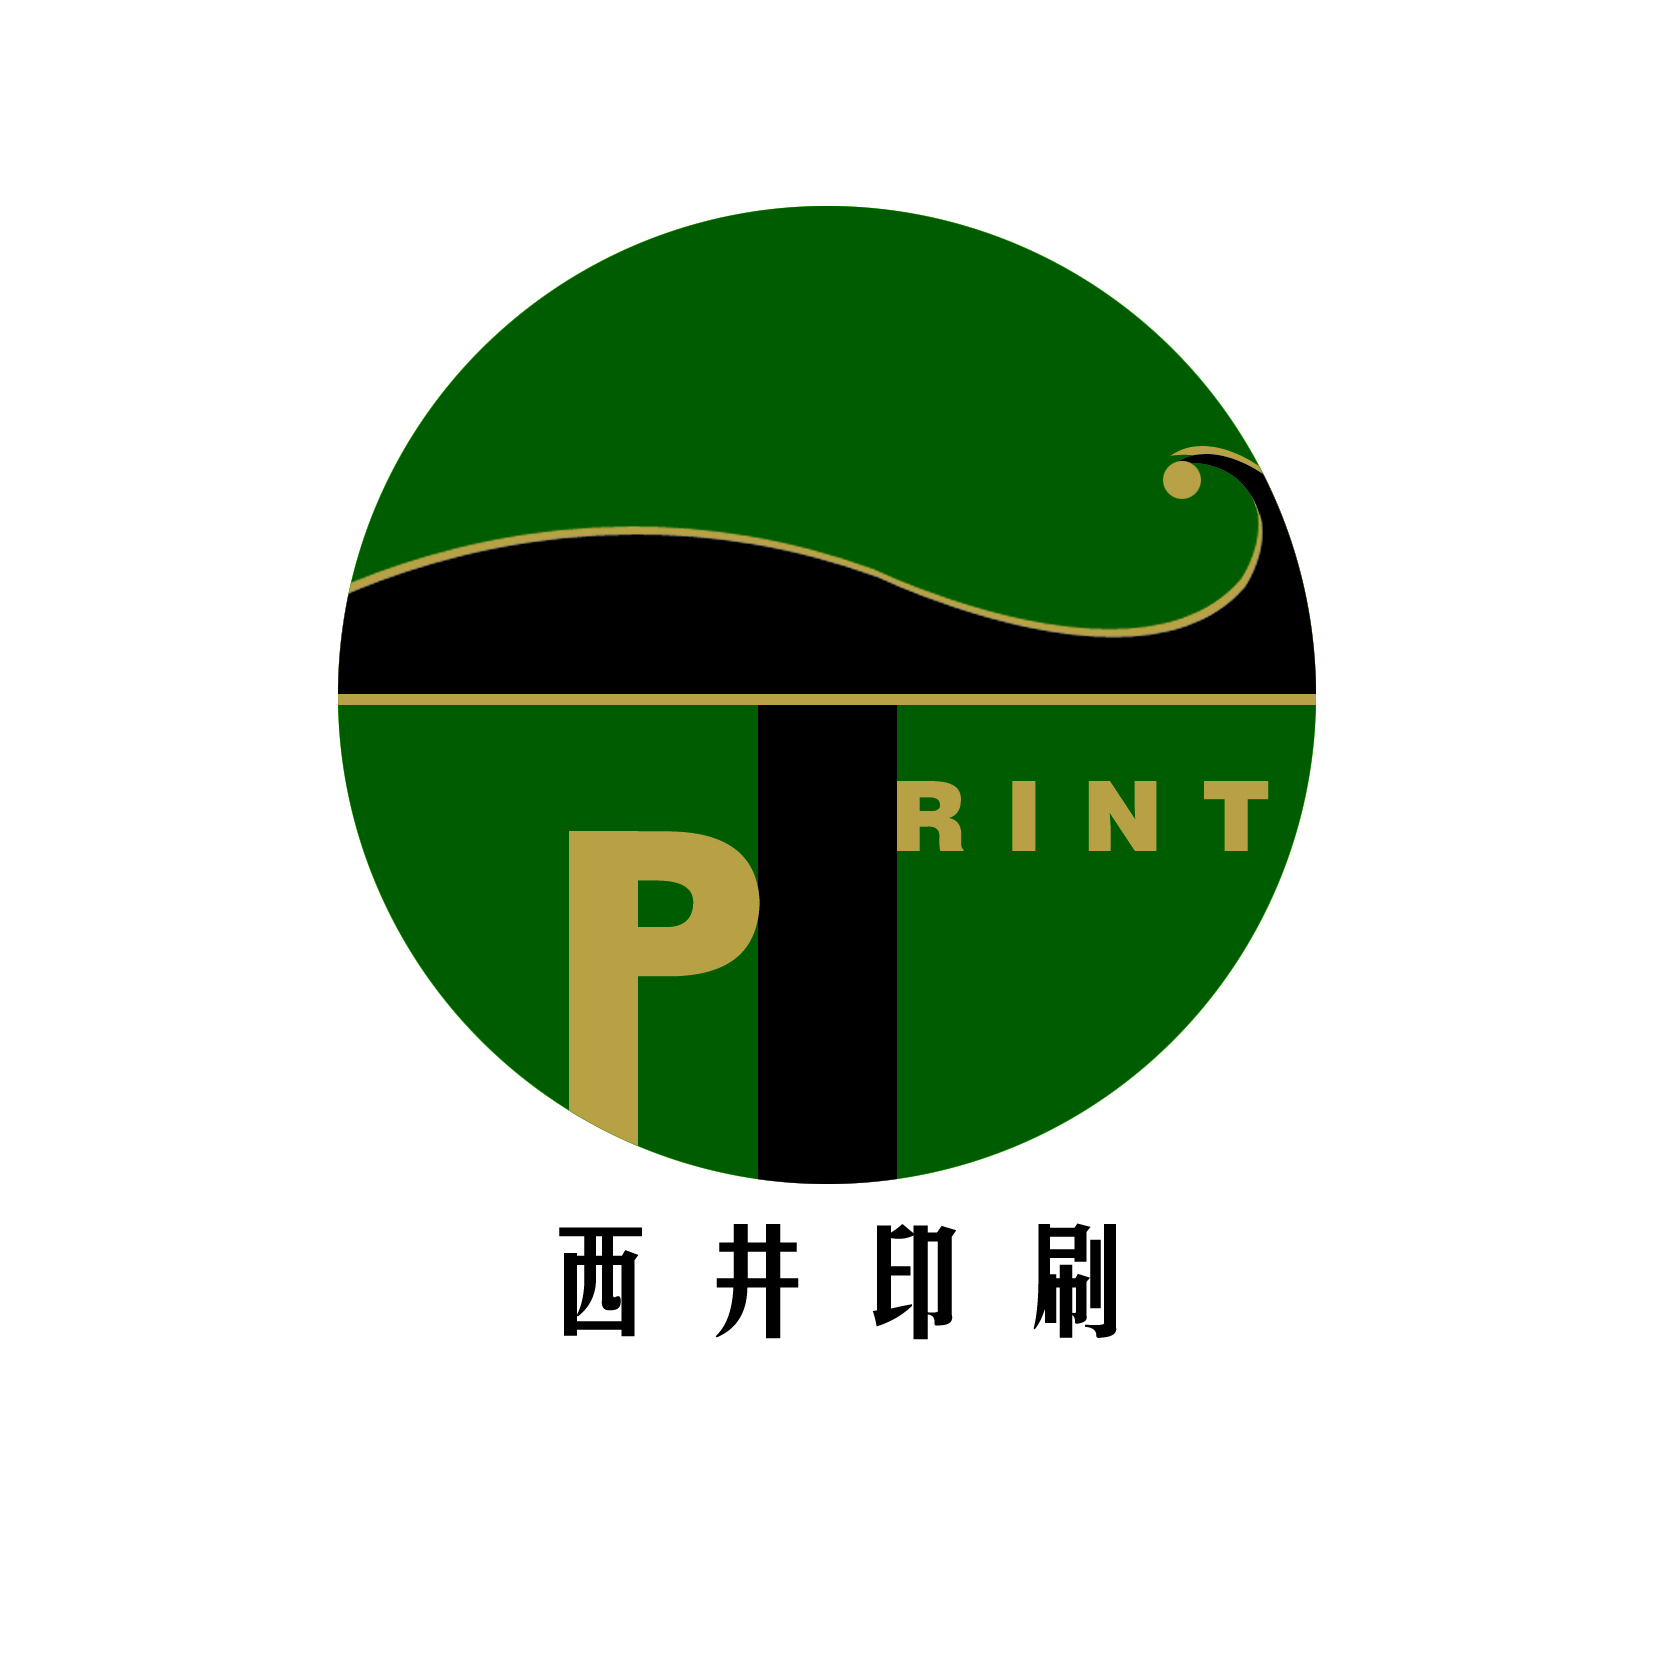 杭州西井印刷有限公司的企业标志